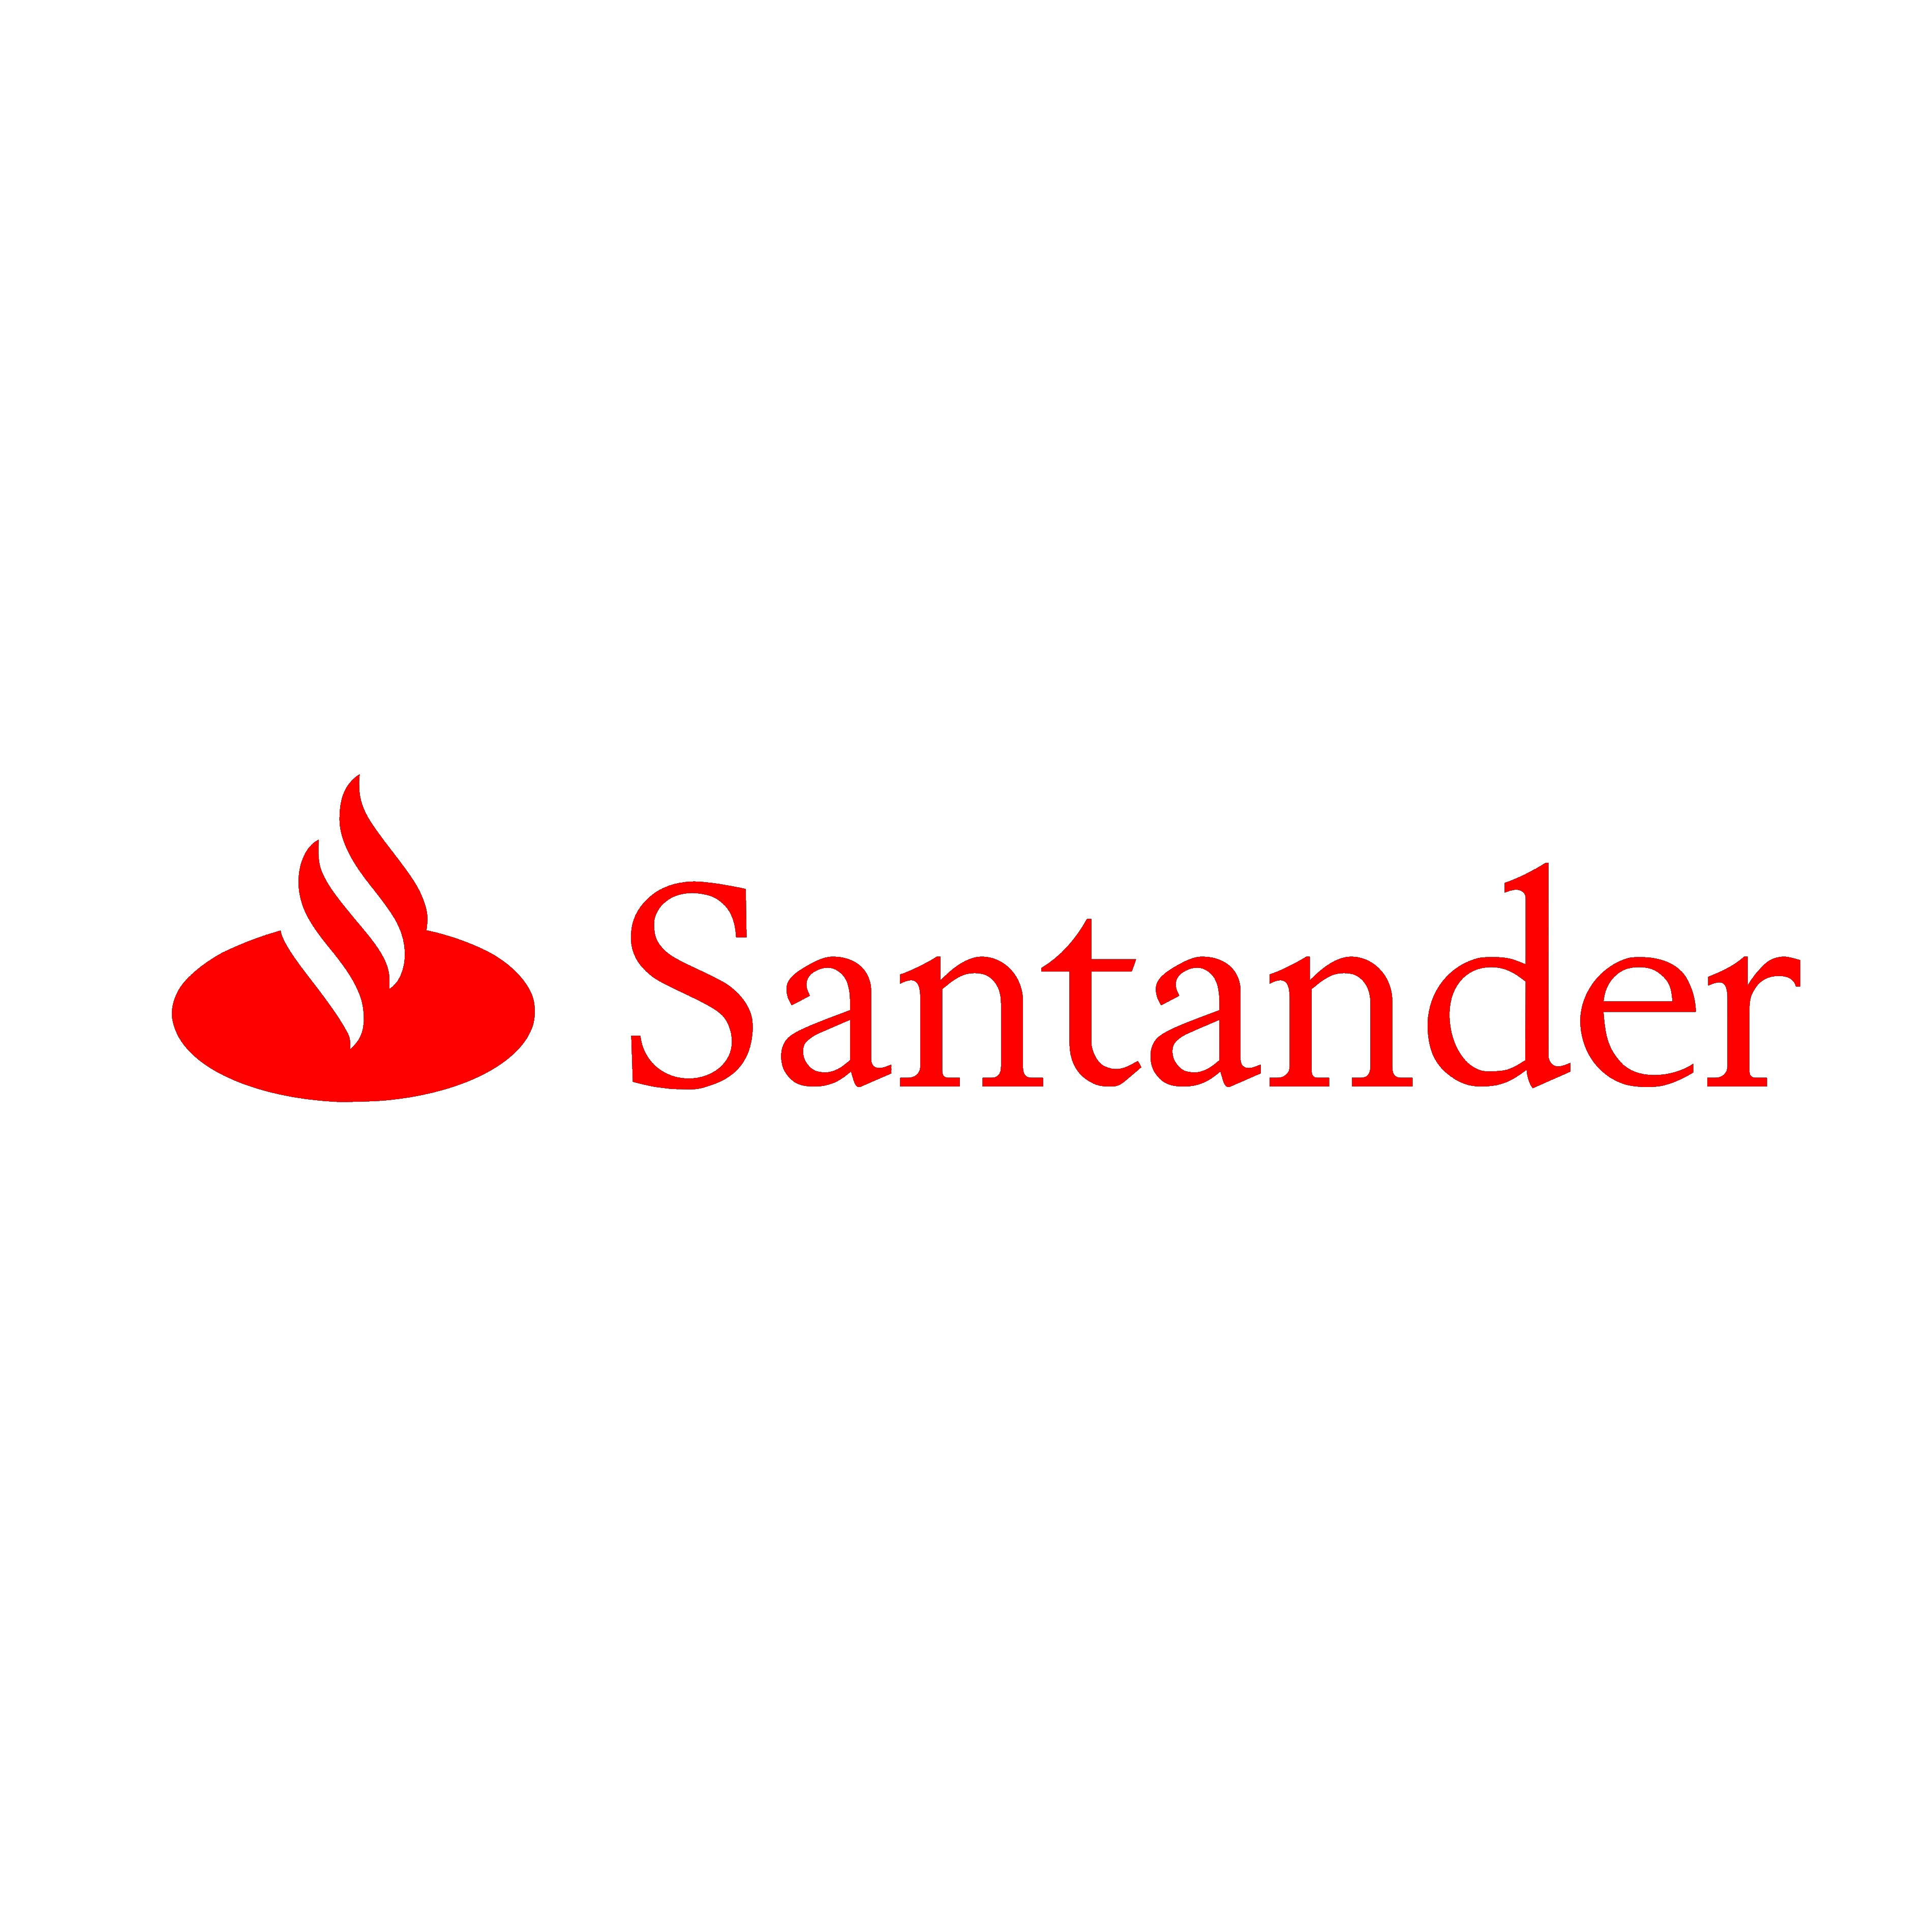 Santander - sprrawdź wszystkie promocje